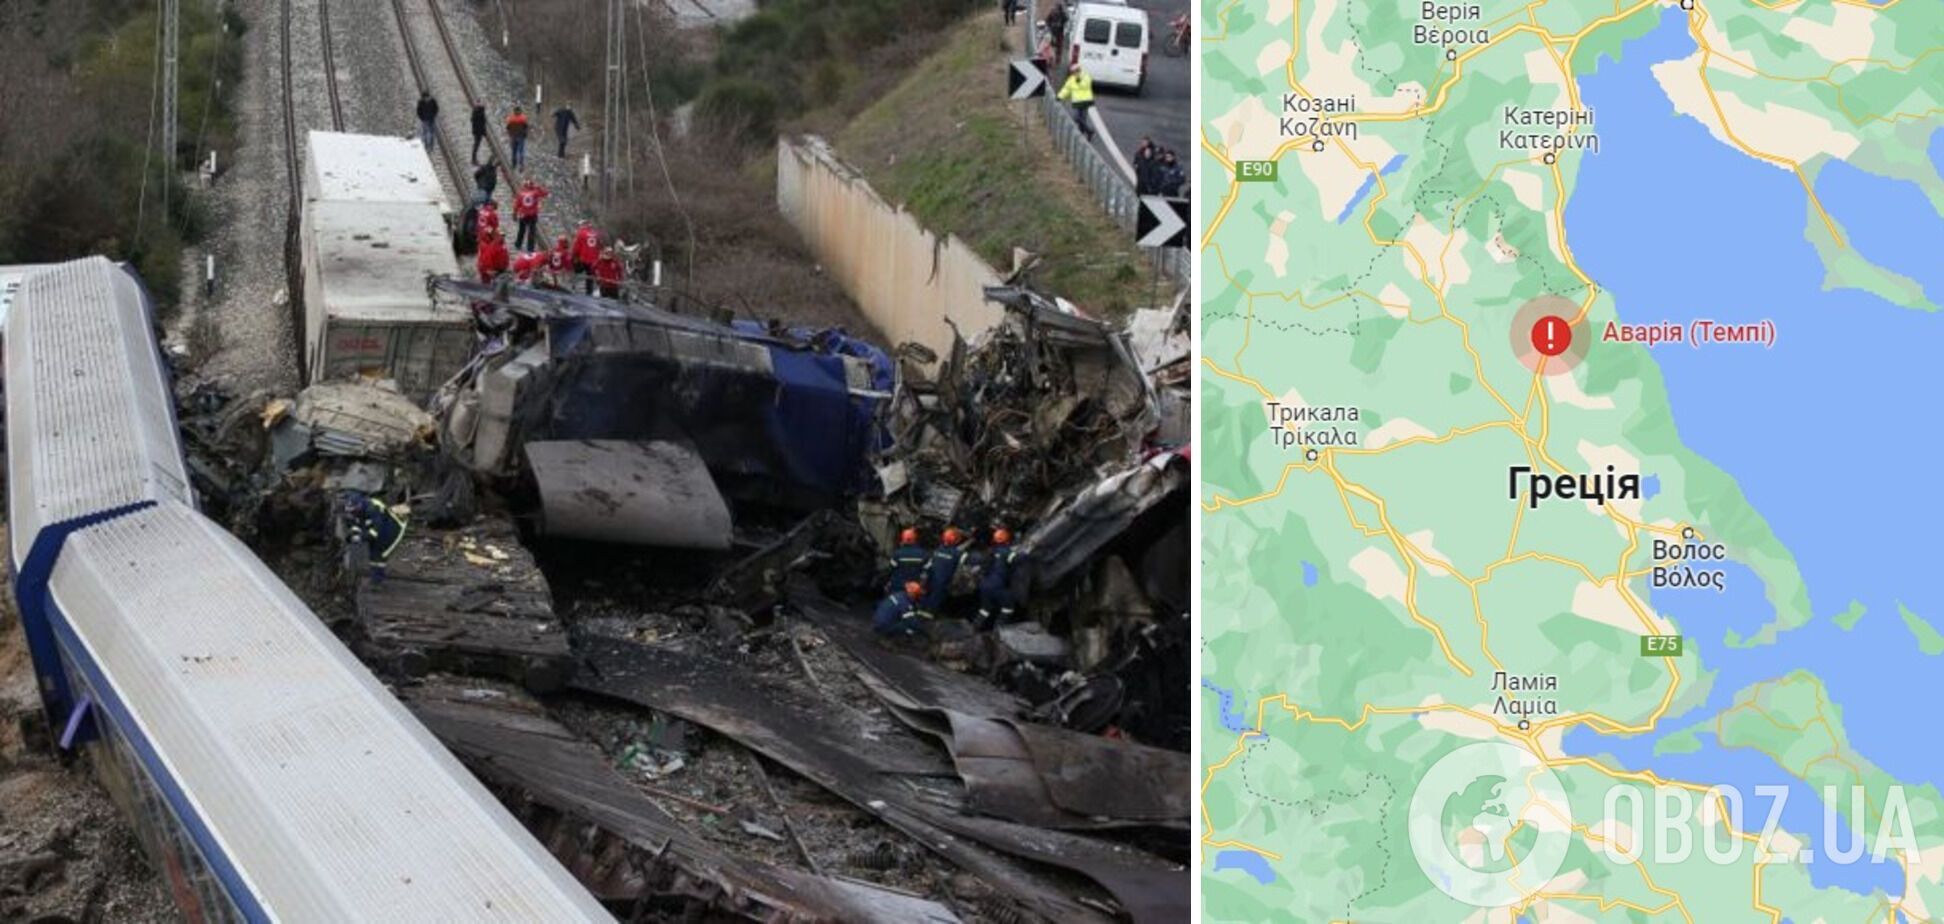 У Греції назвали причину зіткнення поїздів, внаслідок якого загинули 43 особи: у країні оголошено траур. Фото 